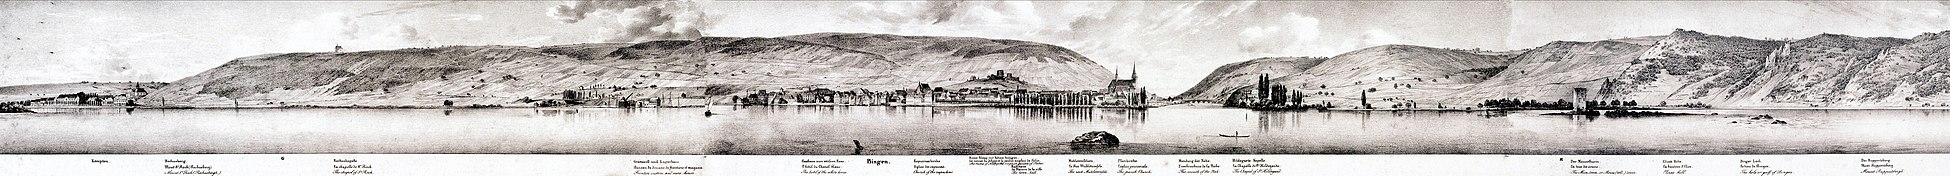 Panorama von Jakob Becker 1833